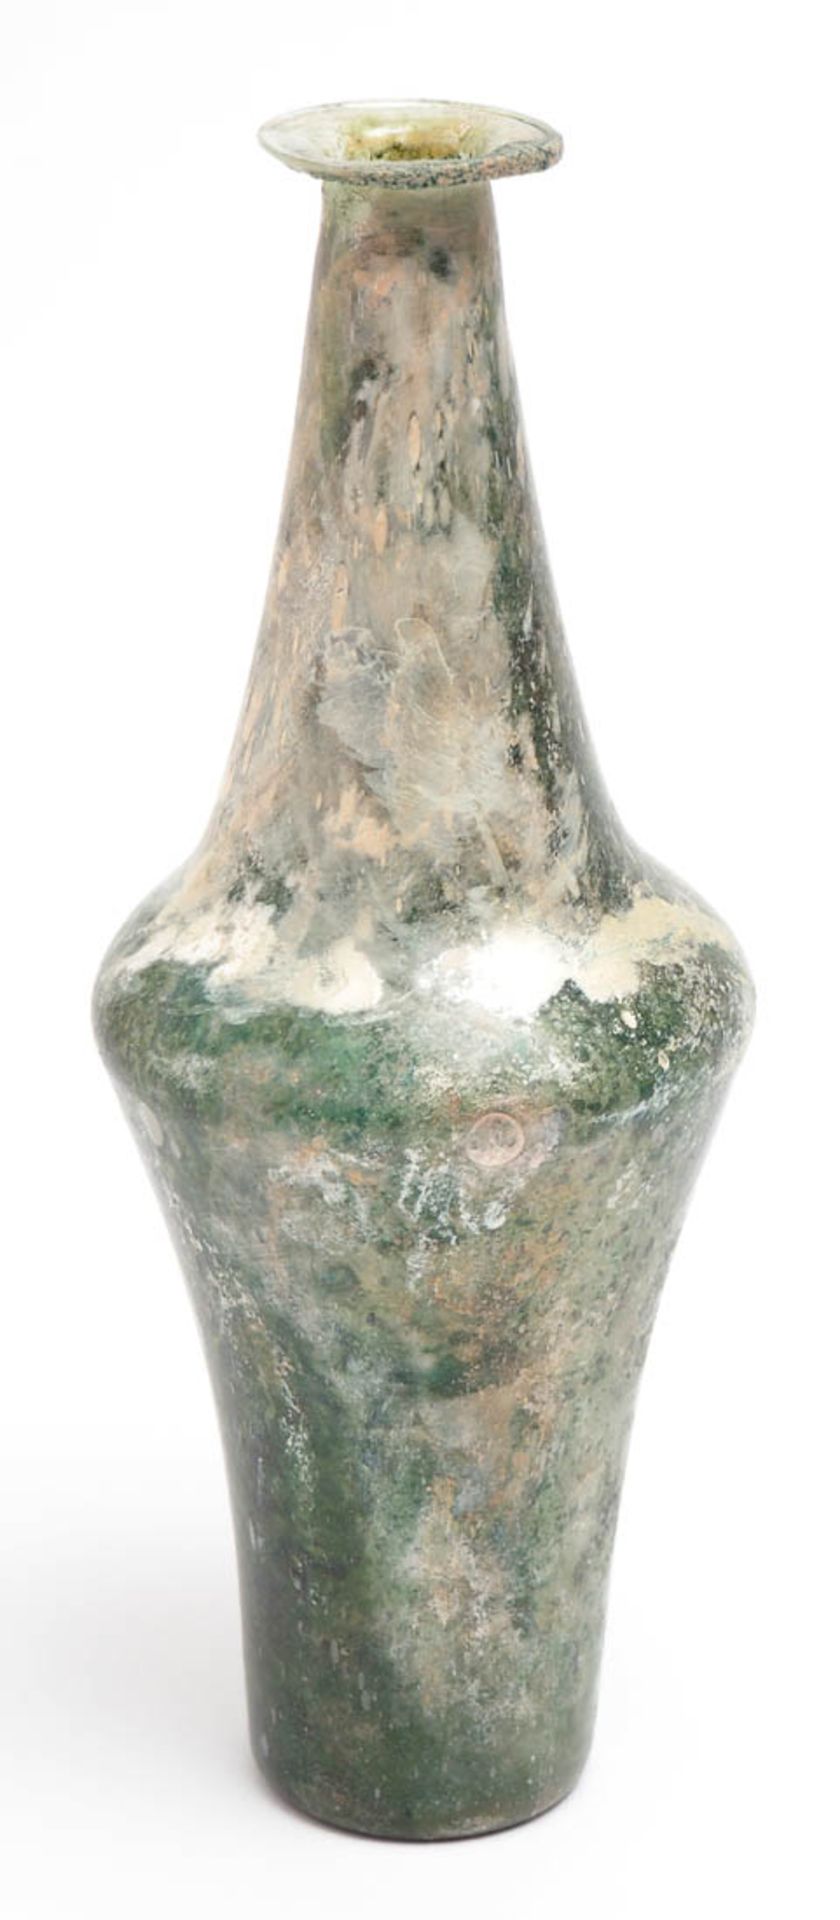 Römische Vase, Kaiserzeit Bikonischer Gefäßkörper mit ausladender Lippe. Grünliches Glas mit Iris.